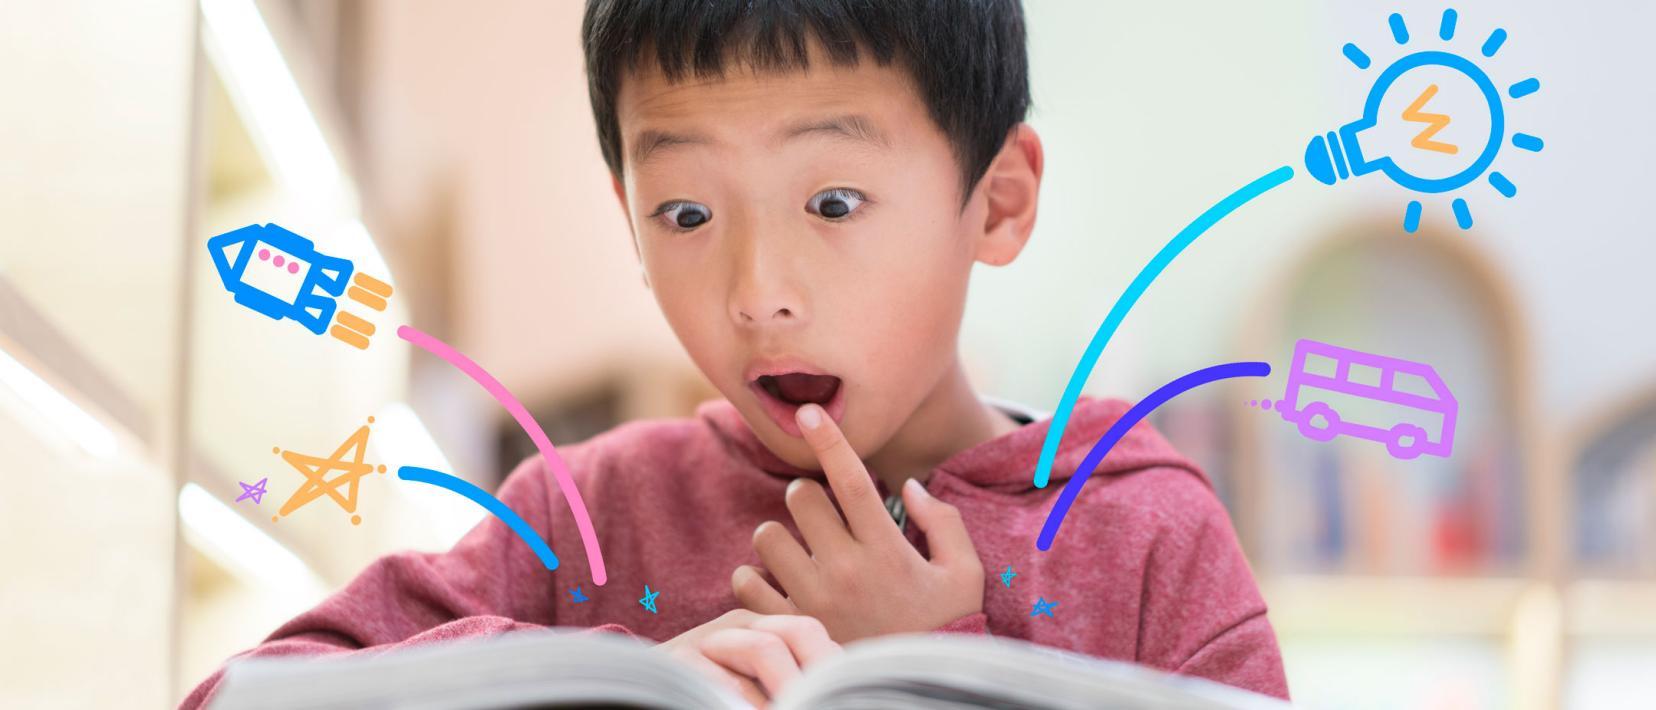 Asiatischer Junge schaut in ein Buch aus dem grafische Elemente herausspringen.